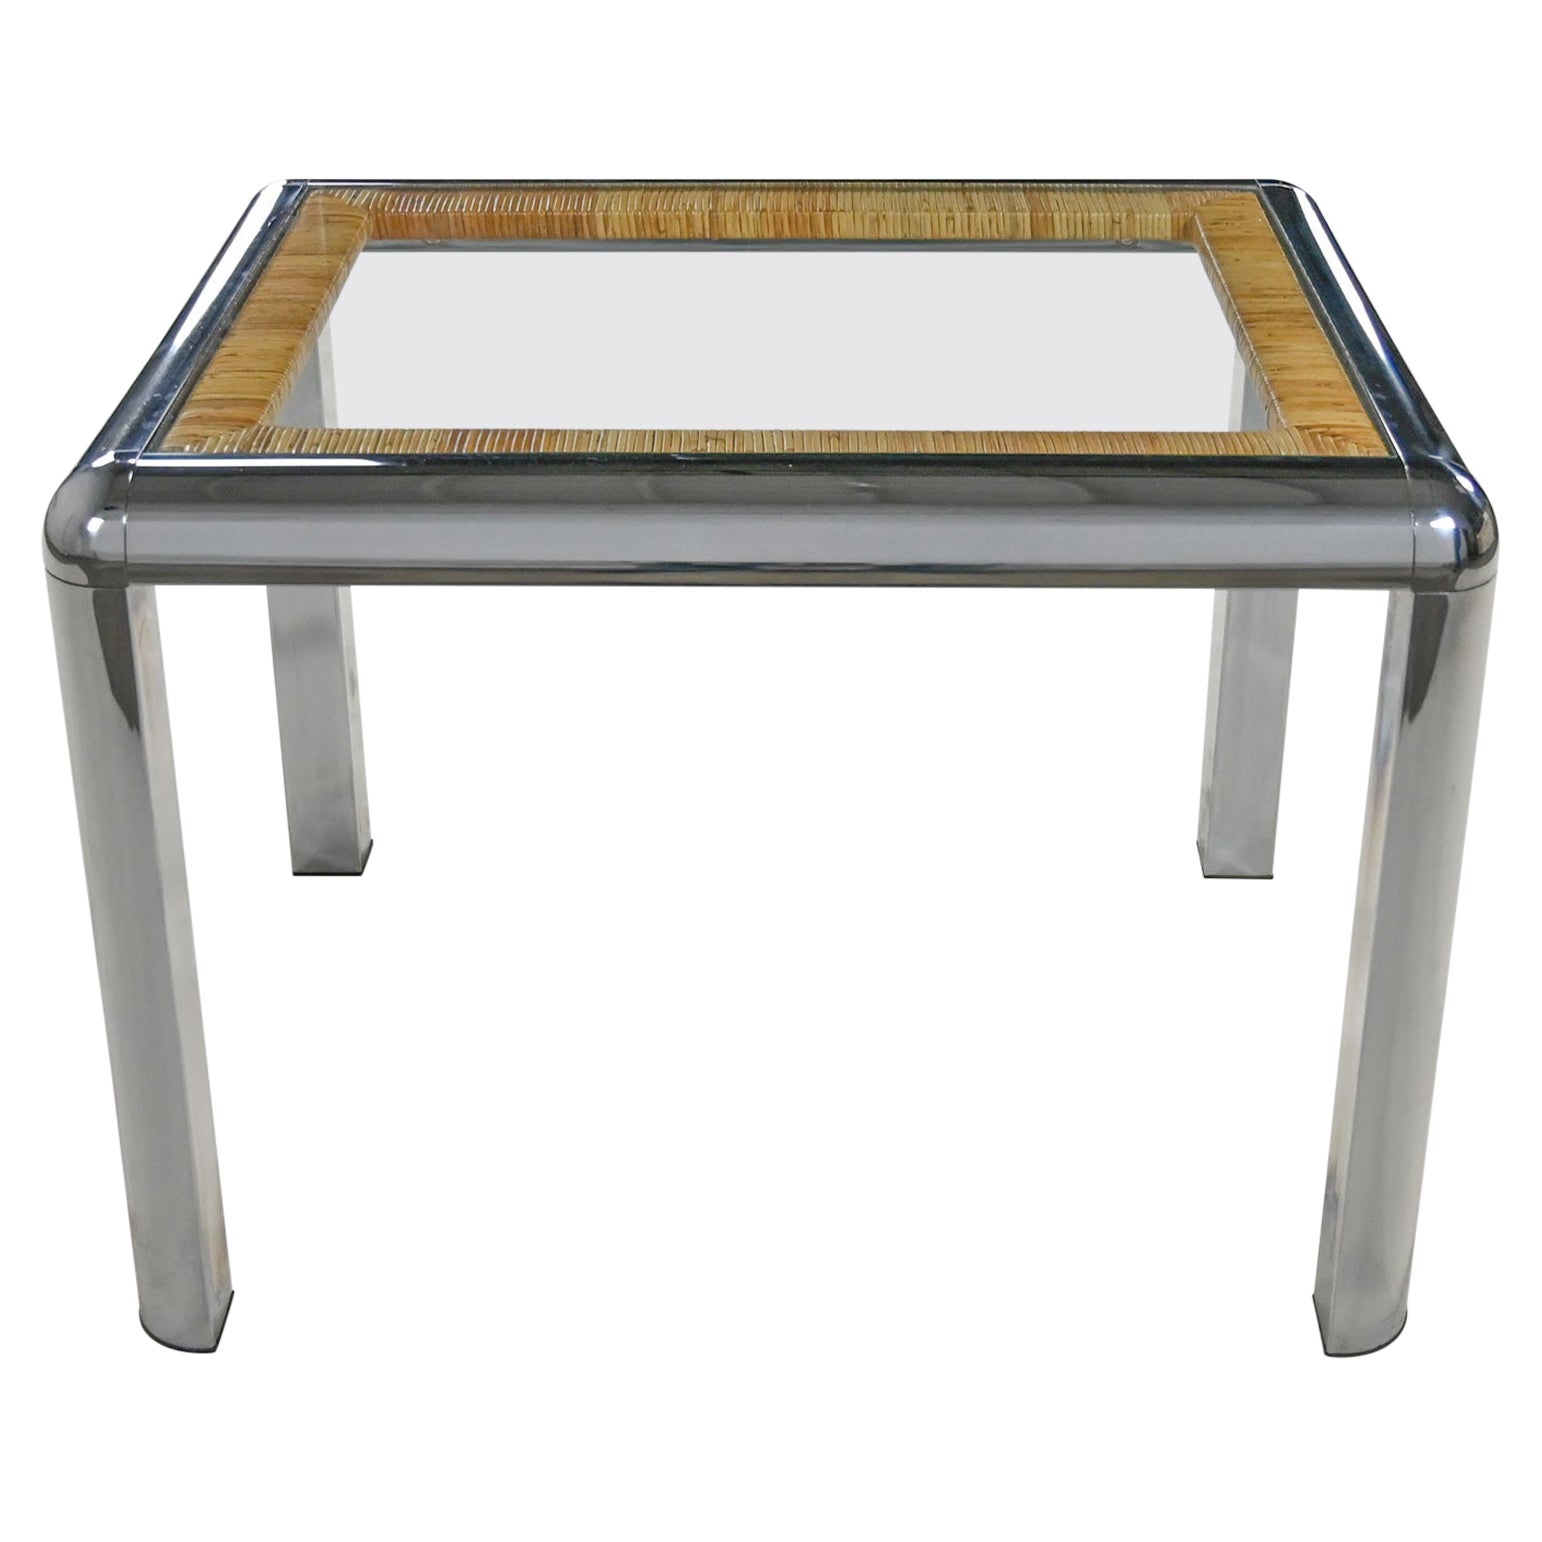 Table d'appoint rectangulaire moderne vintage en verre chromé et rotin enveloppé attribuée à DIA